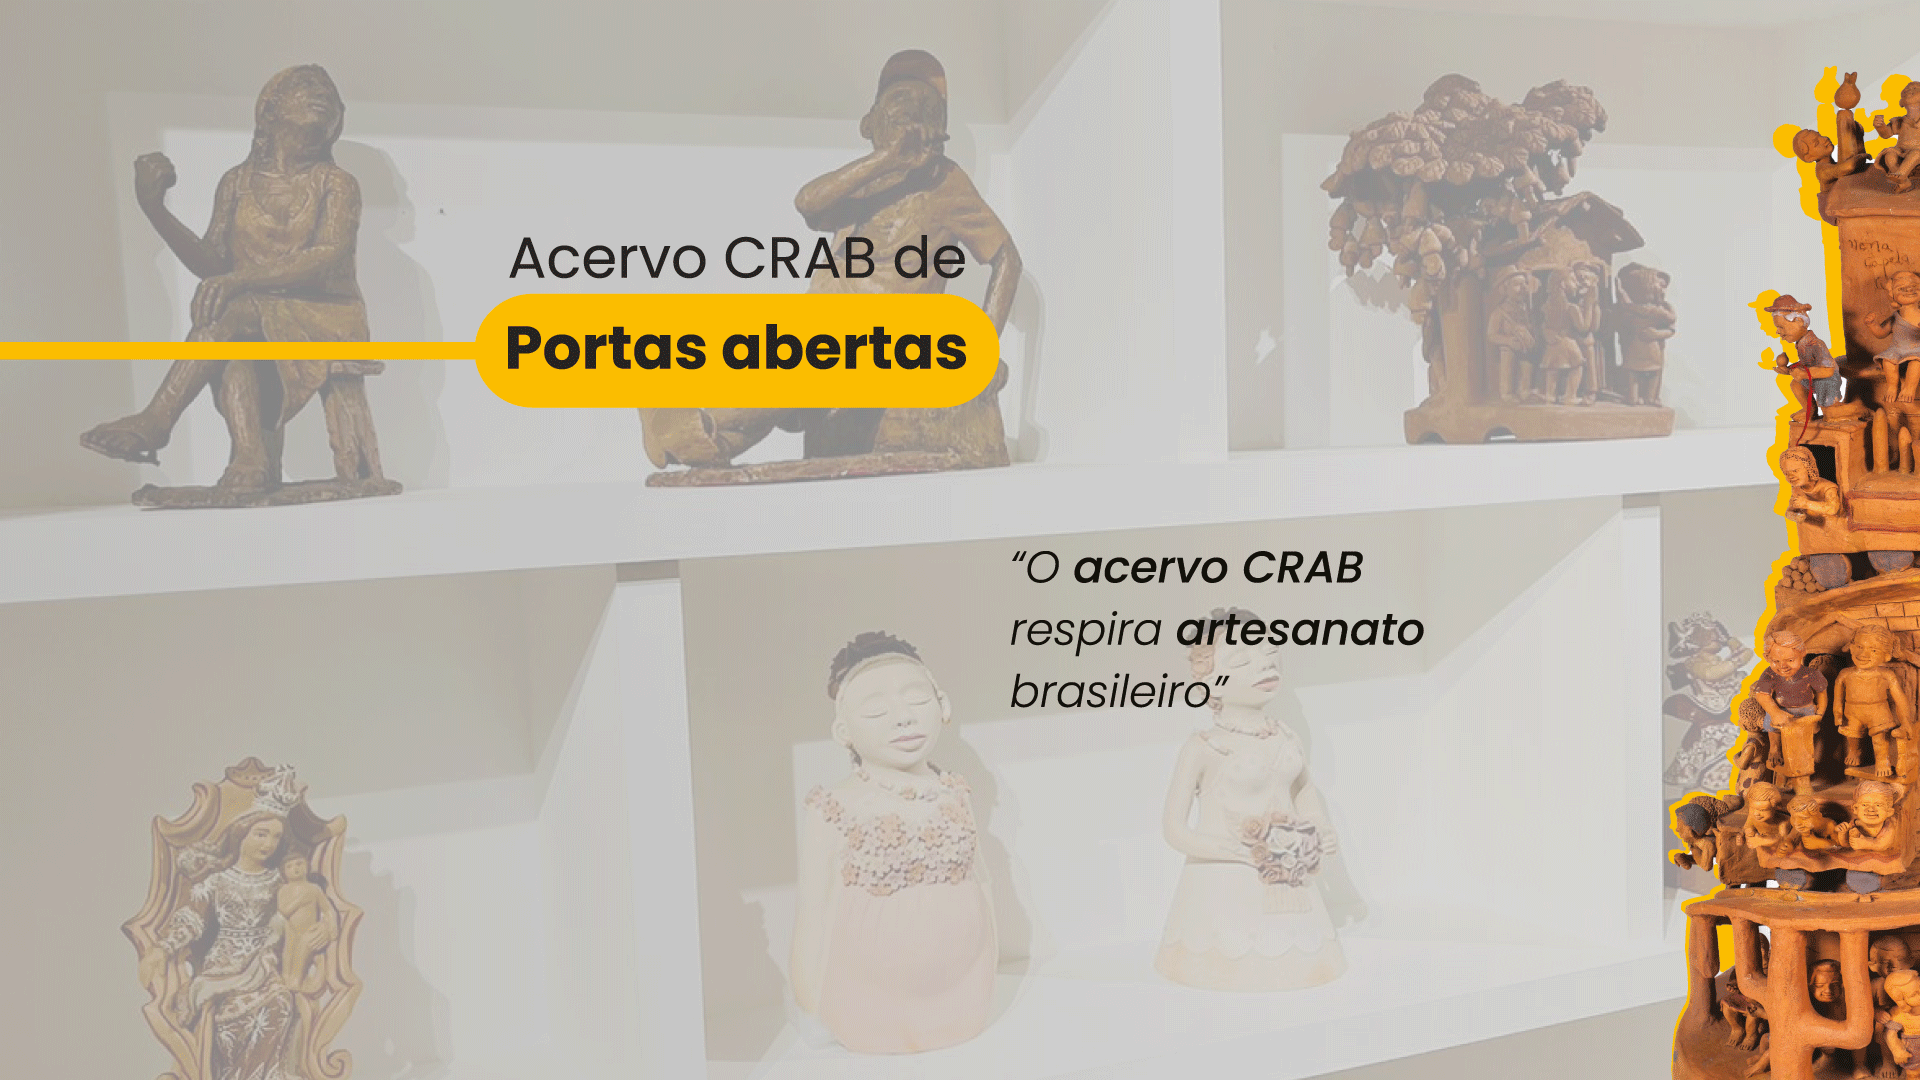 Acervo CRAB artesanato brasileiro